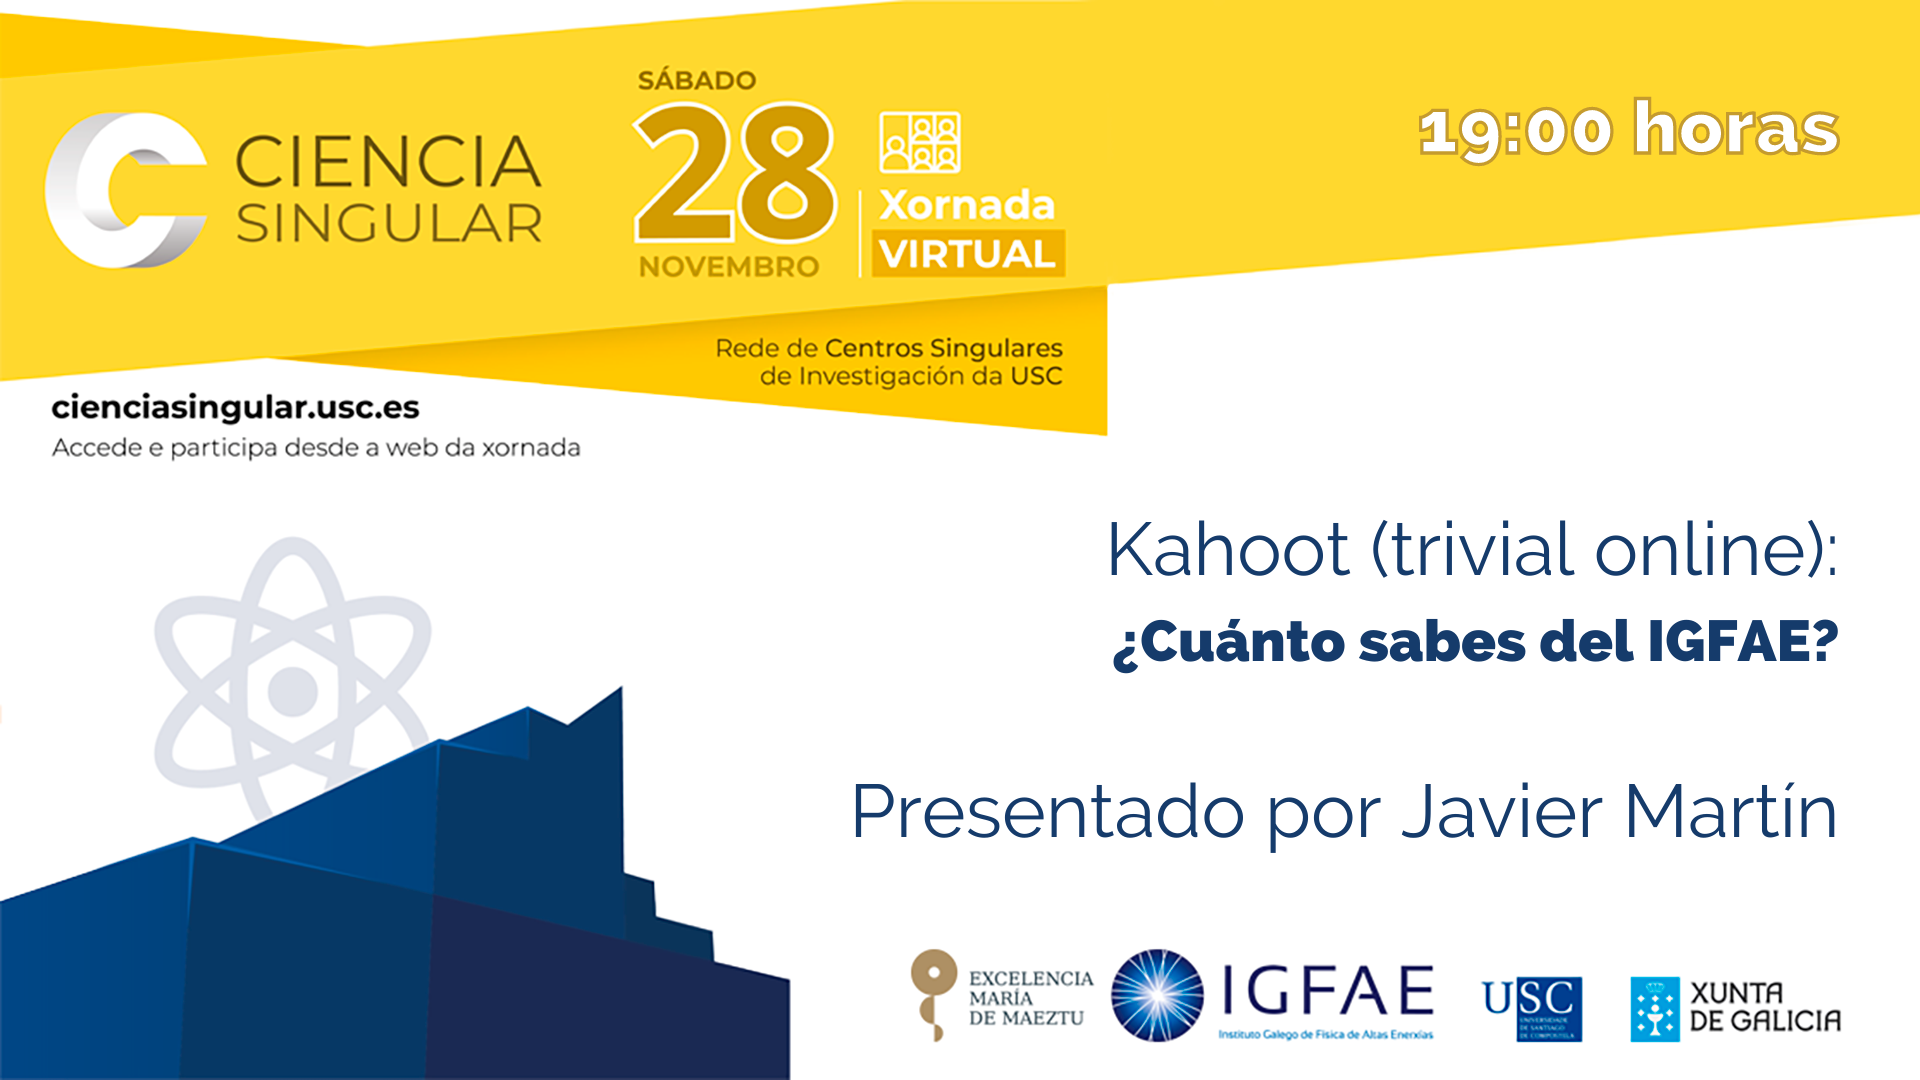 ¿Cuánto sabes del IGFAE? Presentado por Javier Martín.